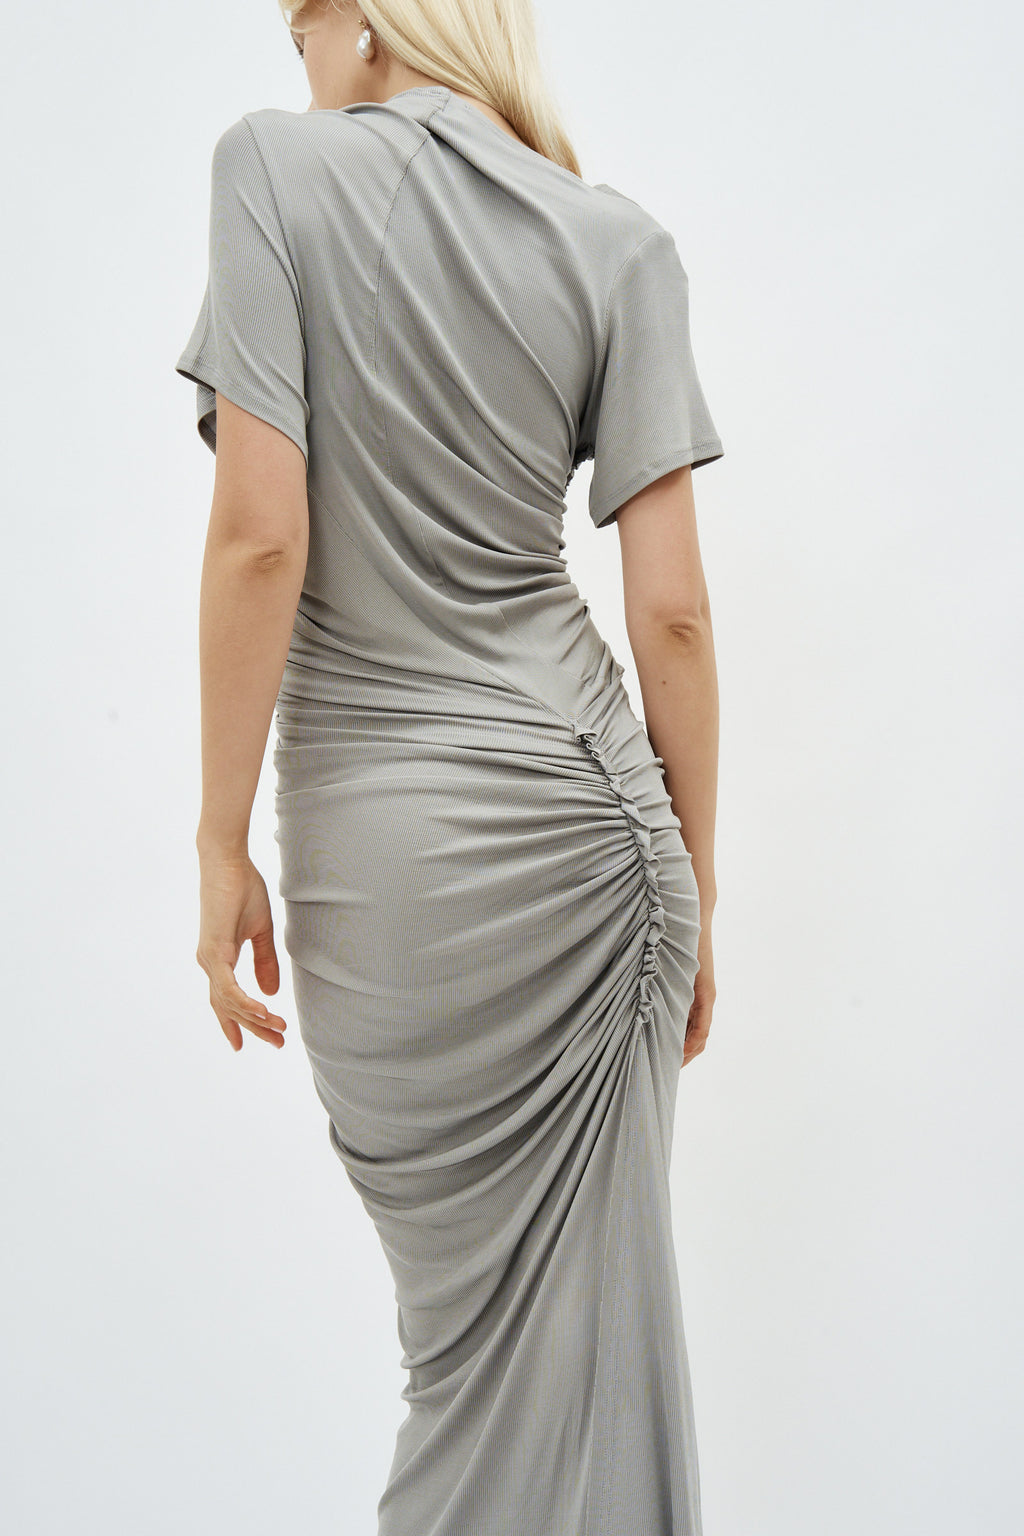 Long Asymmetric Draped Grey Gown